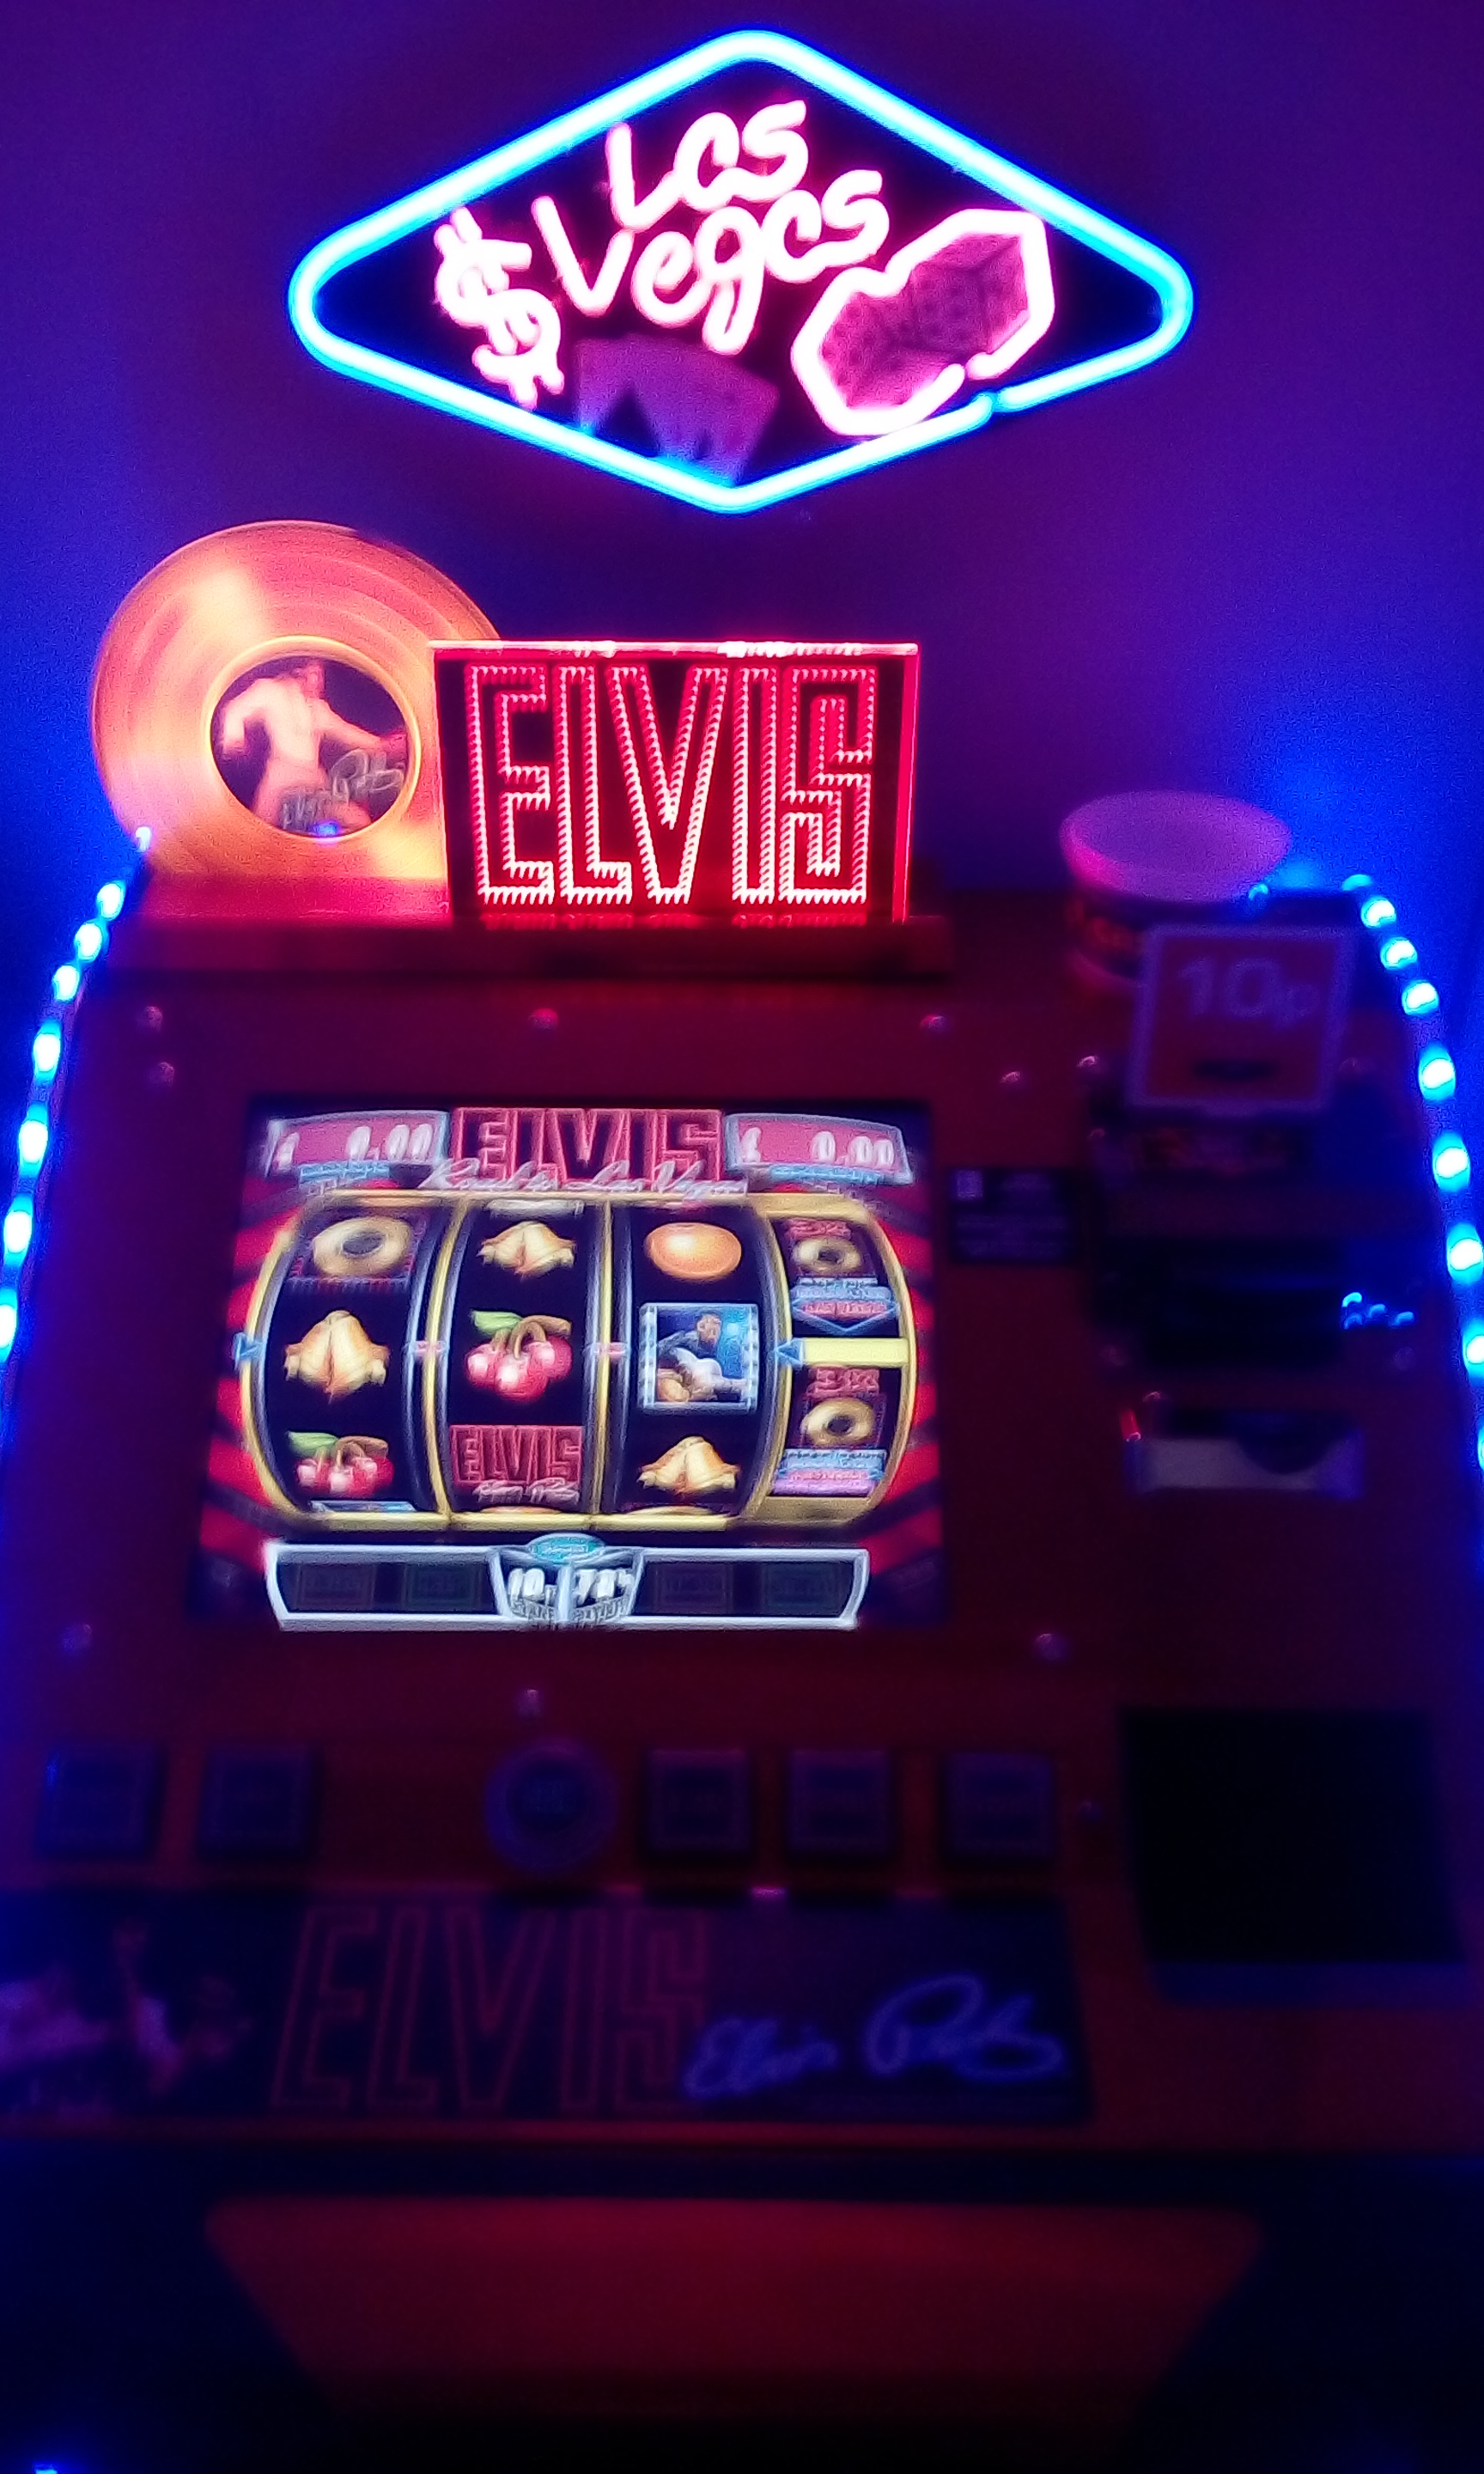 Elvis sitdown machine fully restored